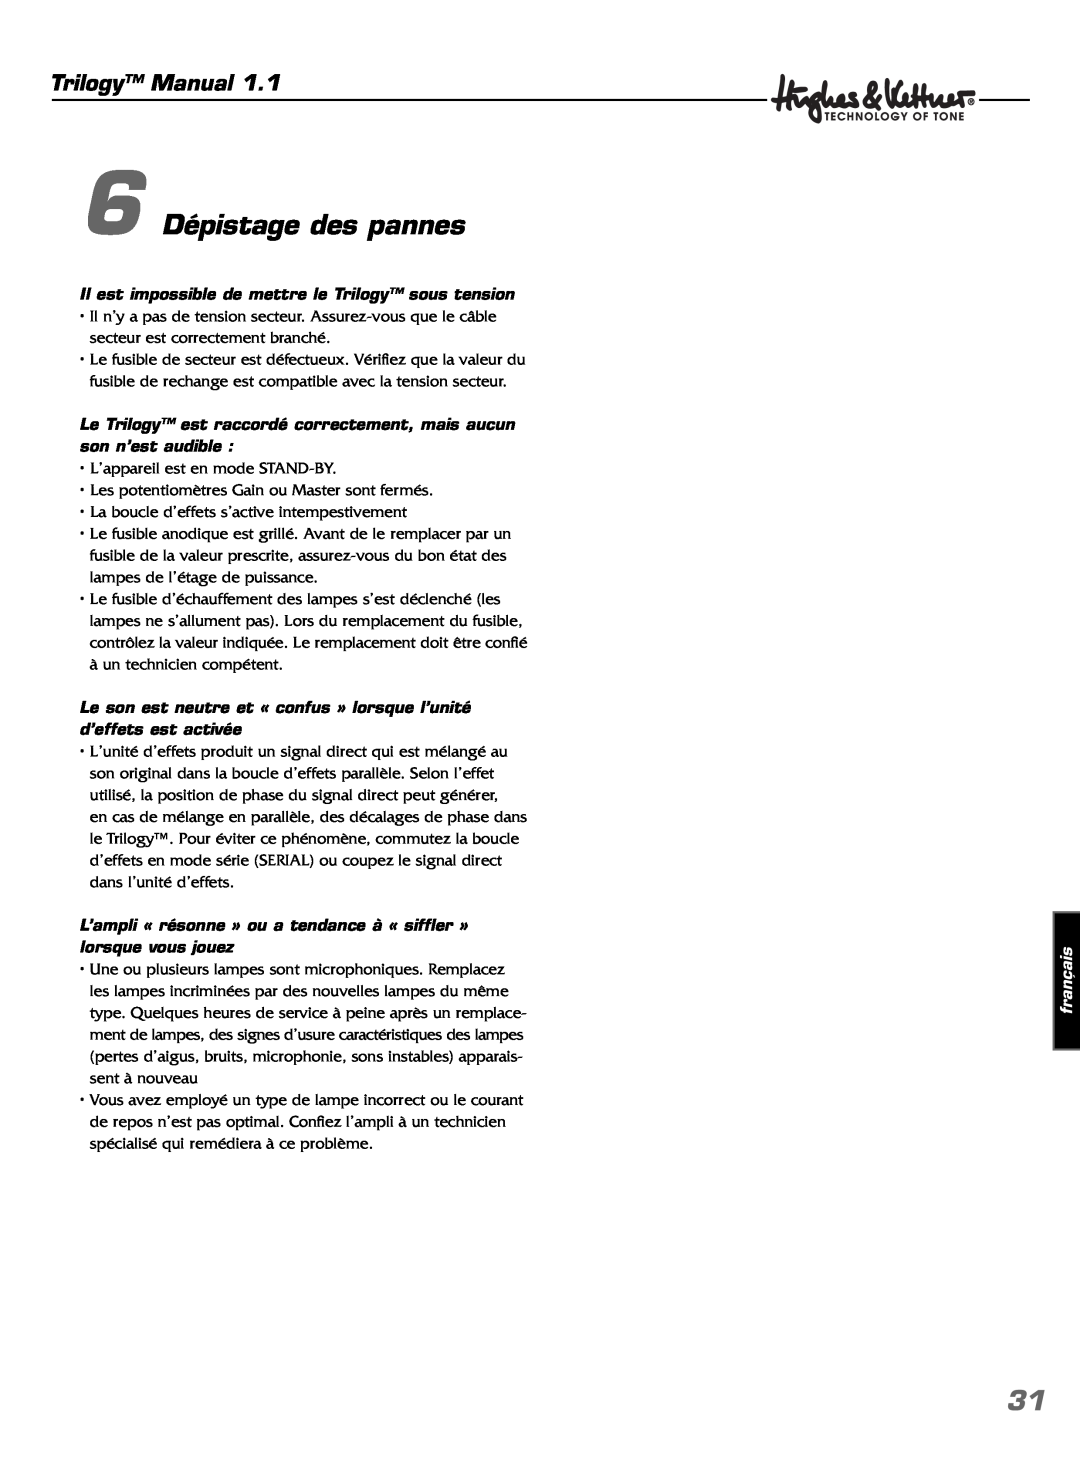 Hughes & Kettner TrilogyTM manual 6 Dépistage des pannes, Trilogy Manual, français 